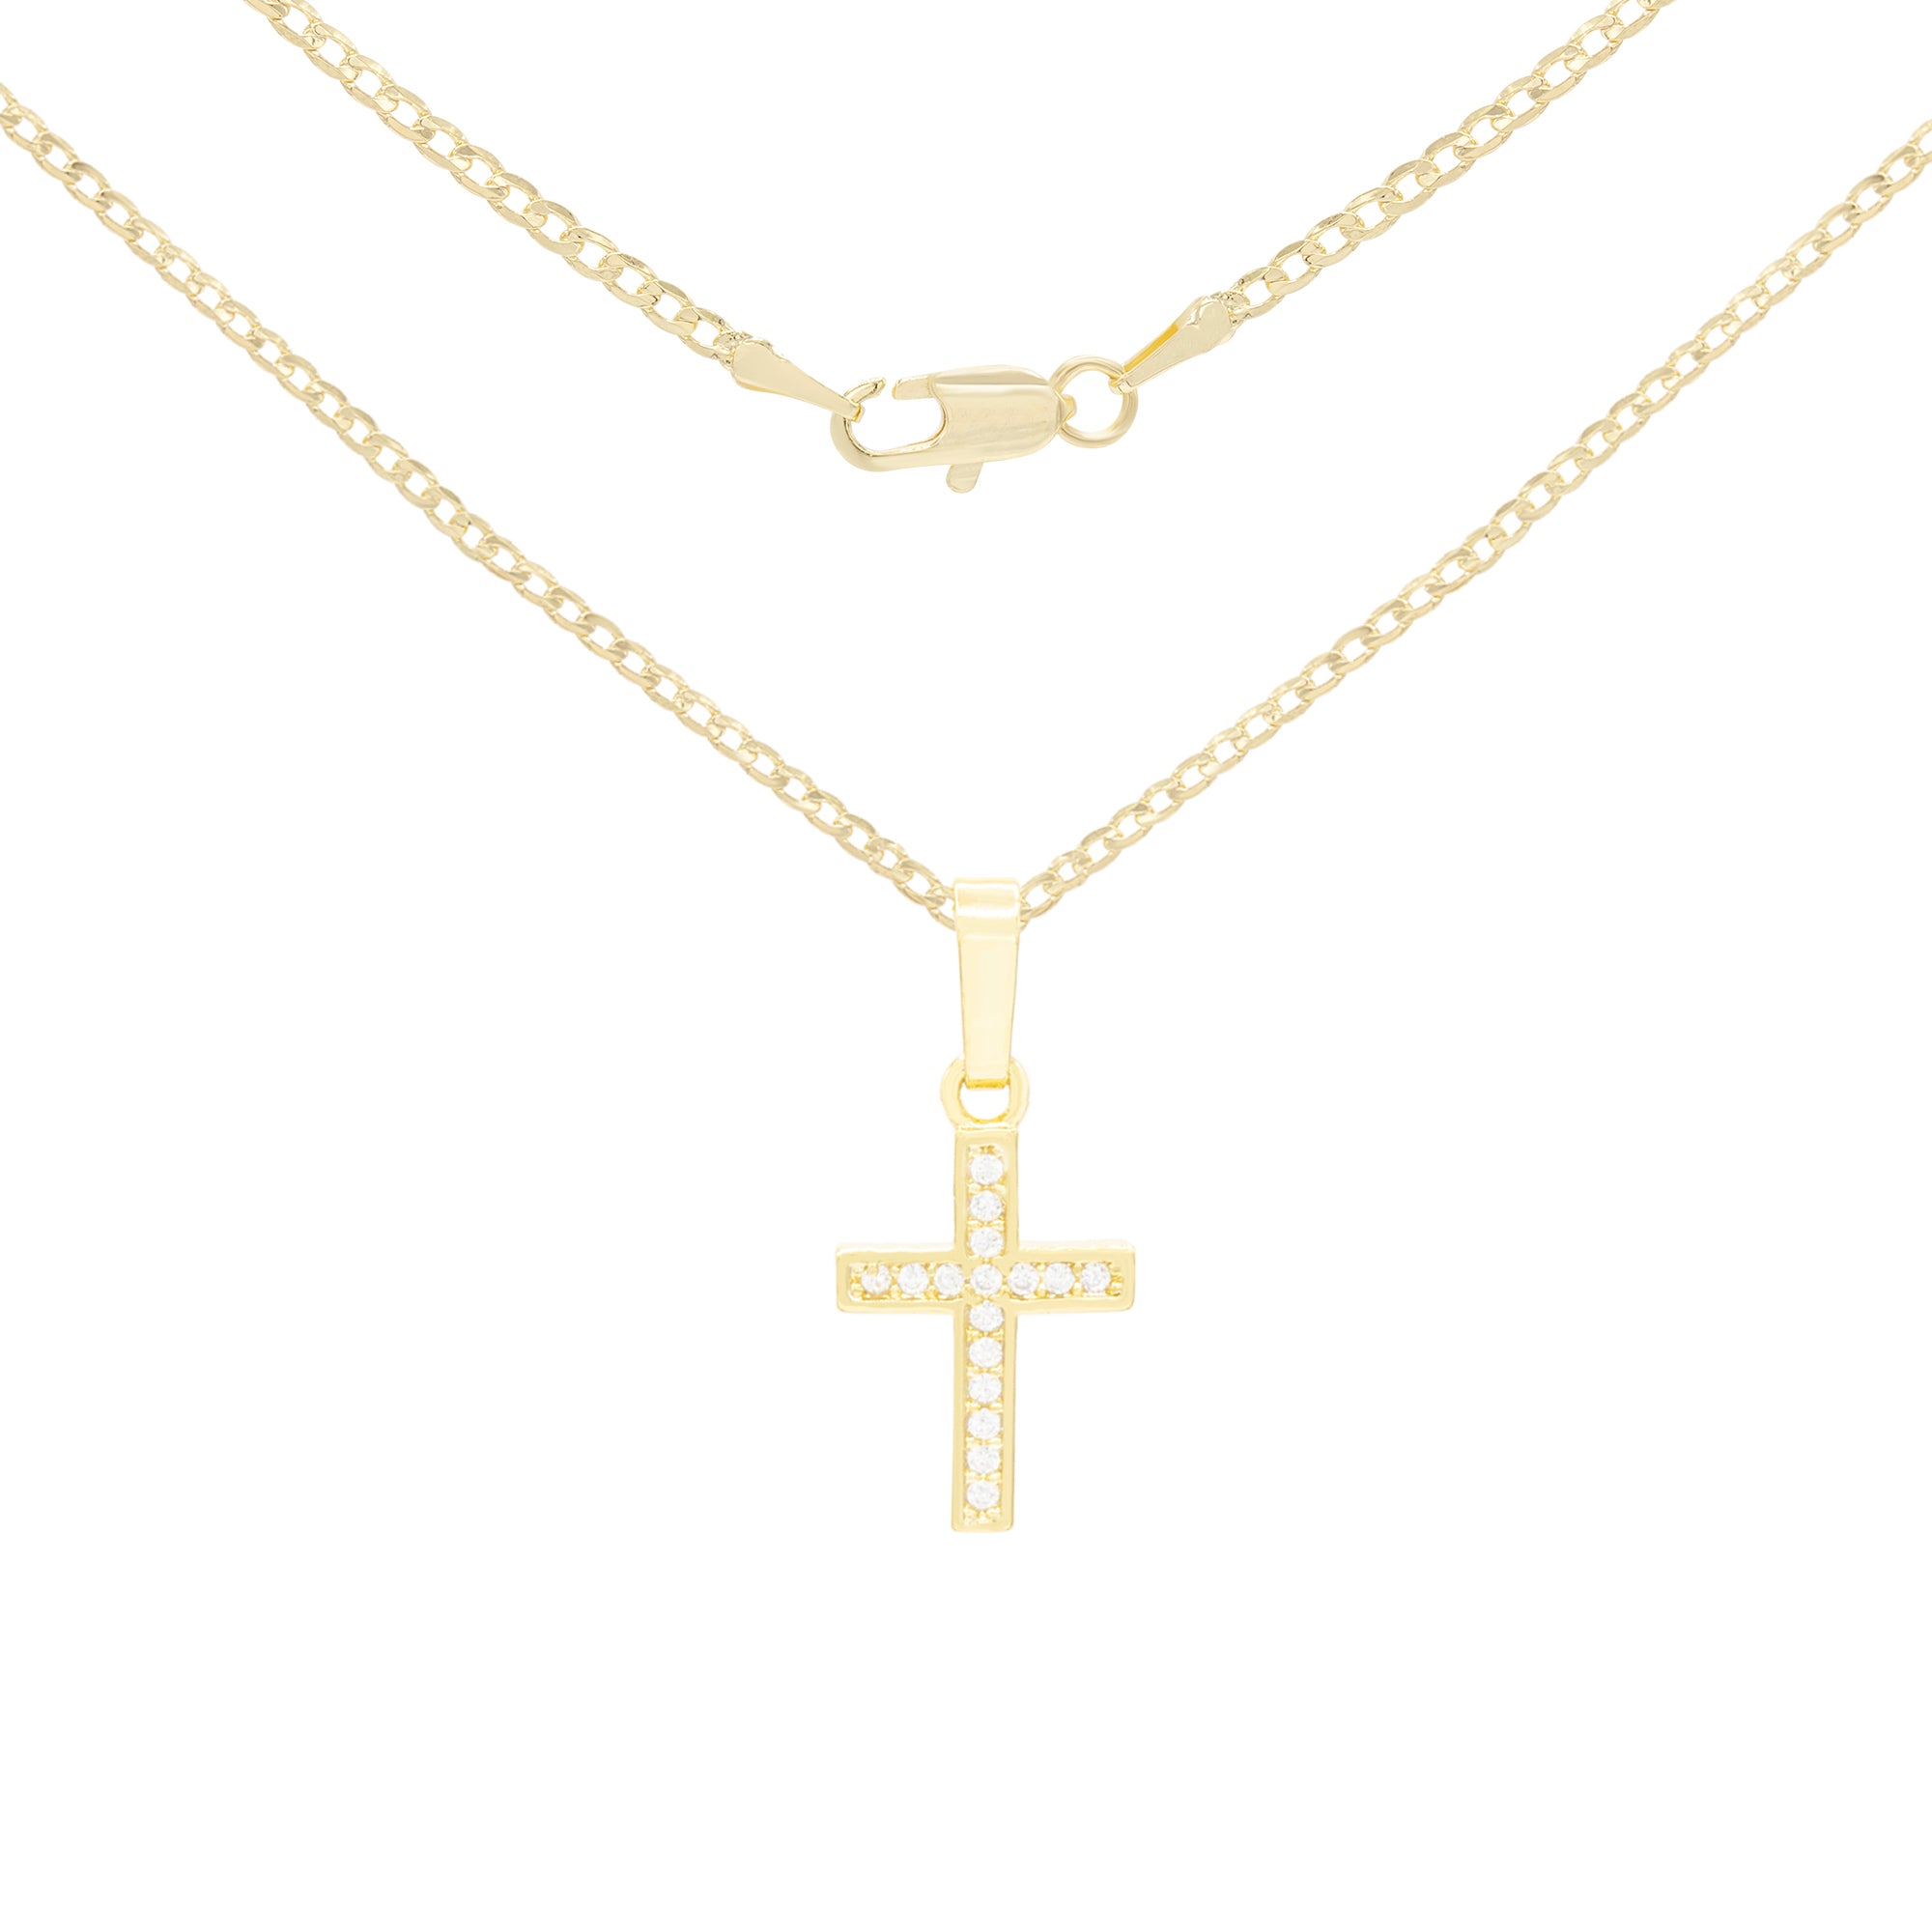 Cross Pendant Necklace Set